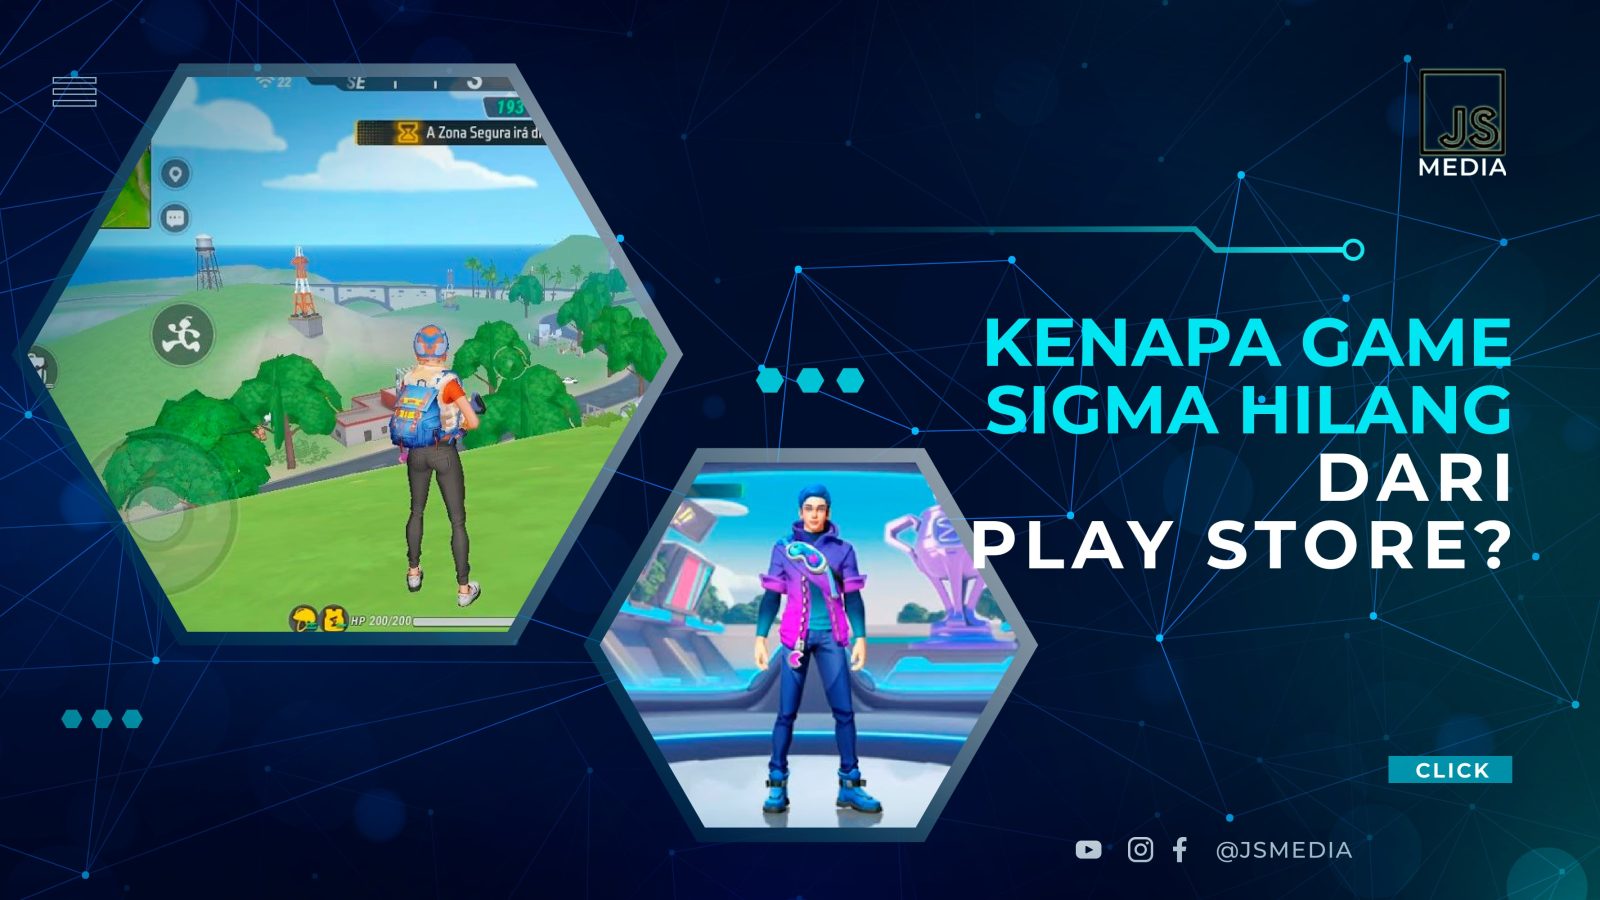 Kenapa Game Sigma Hilang Dari Play Store?